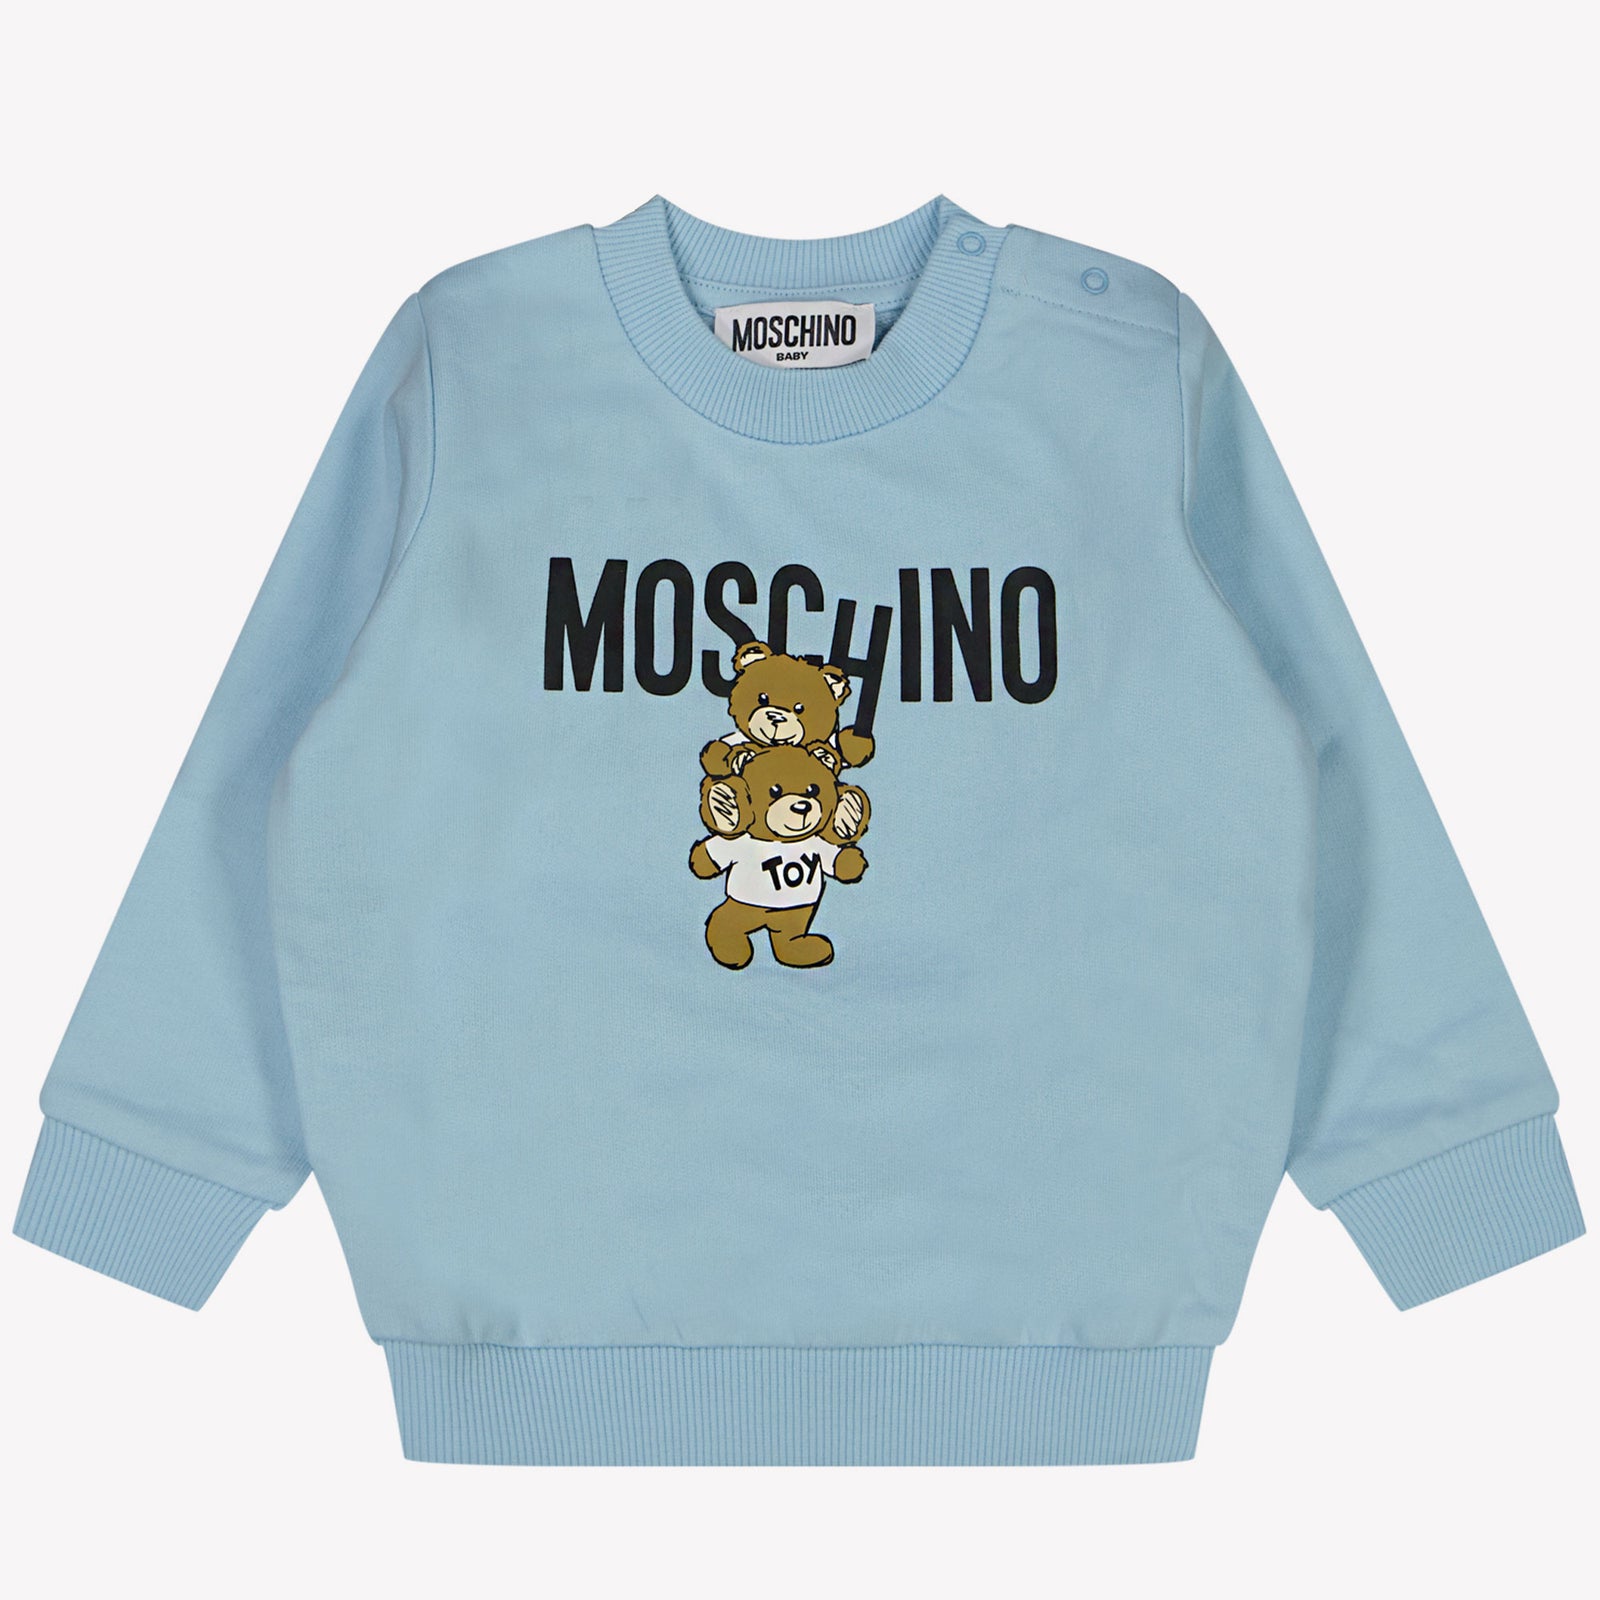 Moschino 男の子のセーターライトブルー